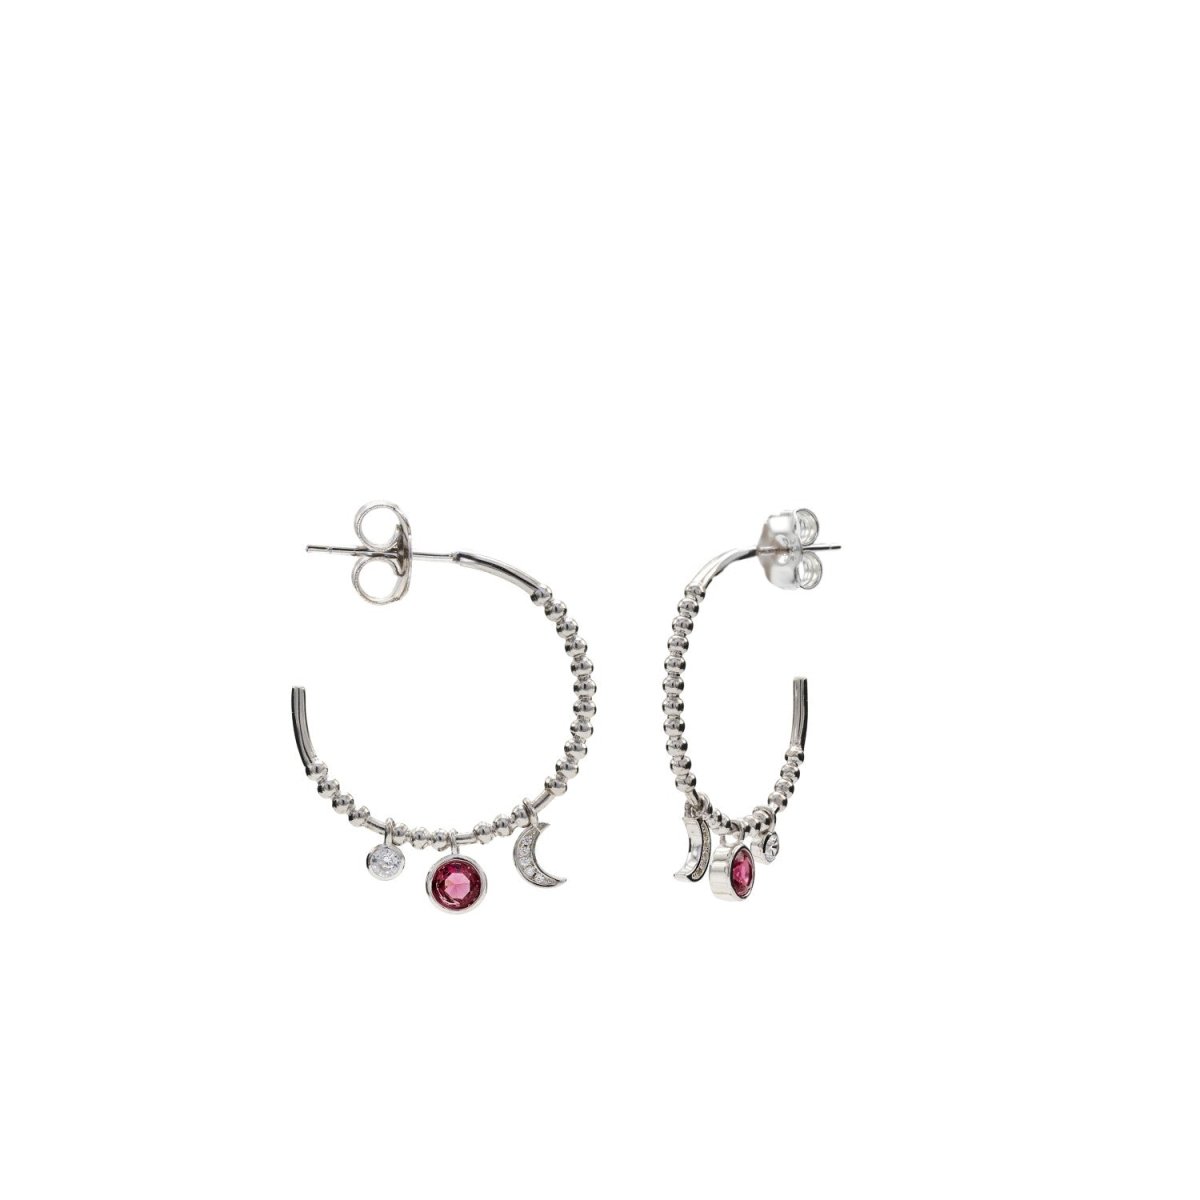 Earrings - Hoop earrings with moon and circle motif pendants